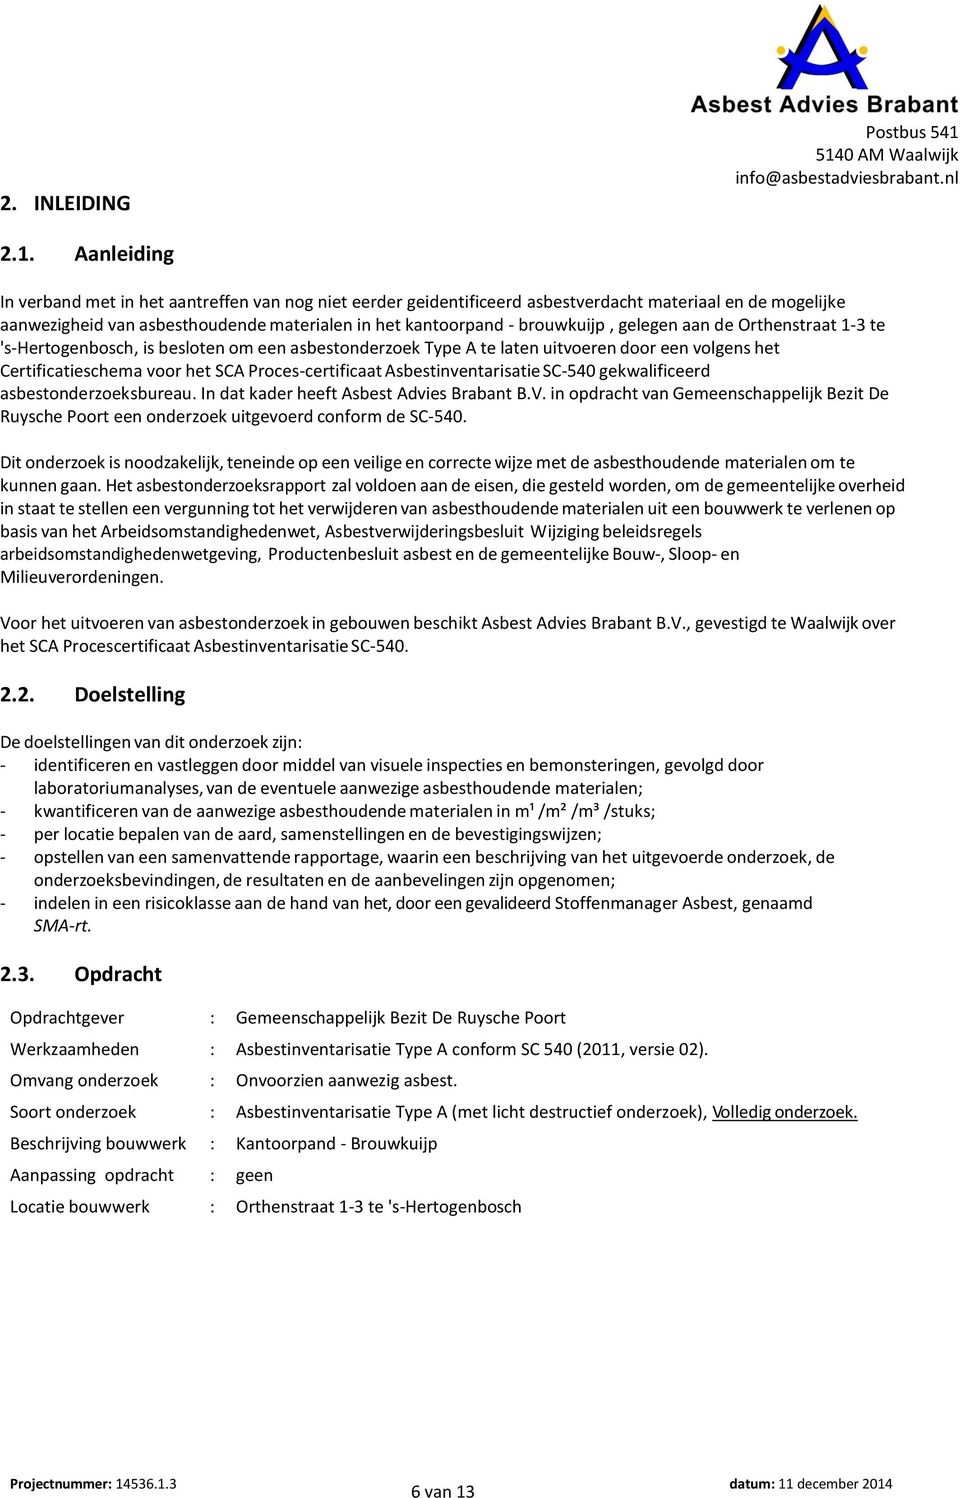 brouwkuijp, gelegen aan de Orthenstraat 1-3 te 's-hertogenbosch, is besloten om een asbestonderzoek Type A te laten uitvoeren door een volgens het Certificatieschema voor het SCA Proces-certificaat